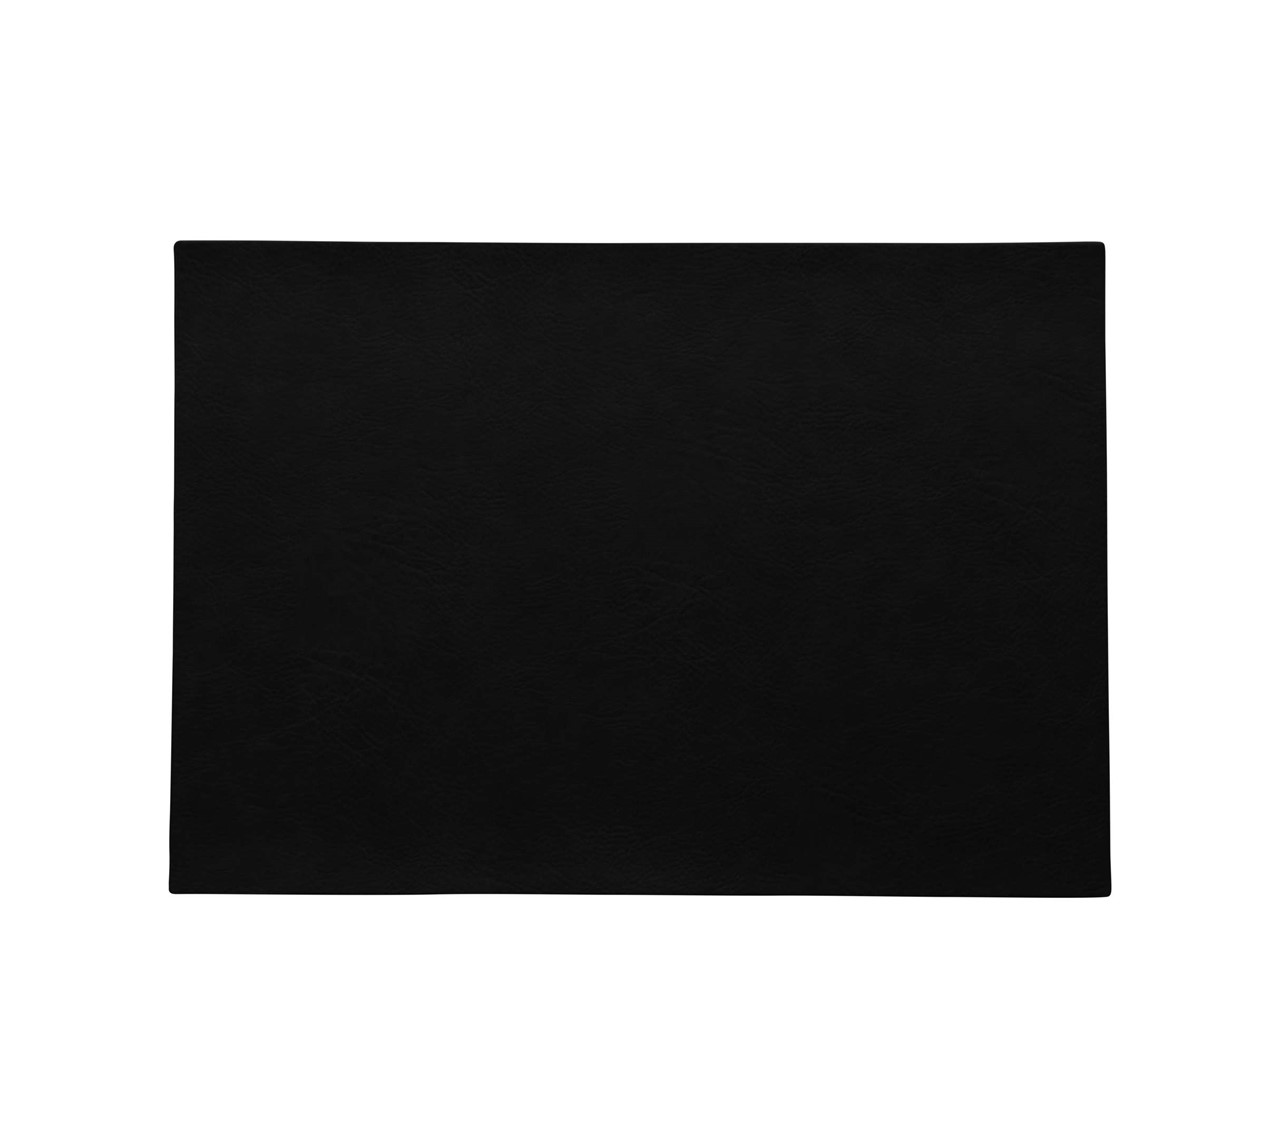 Bild von Tischset black schwarz vegan Lederoptik